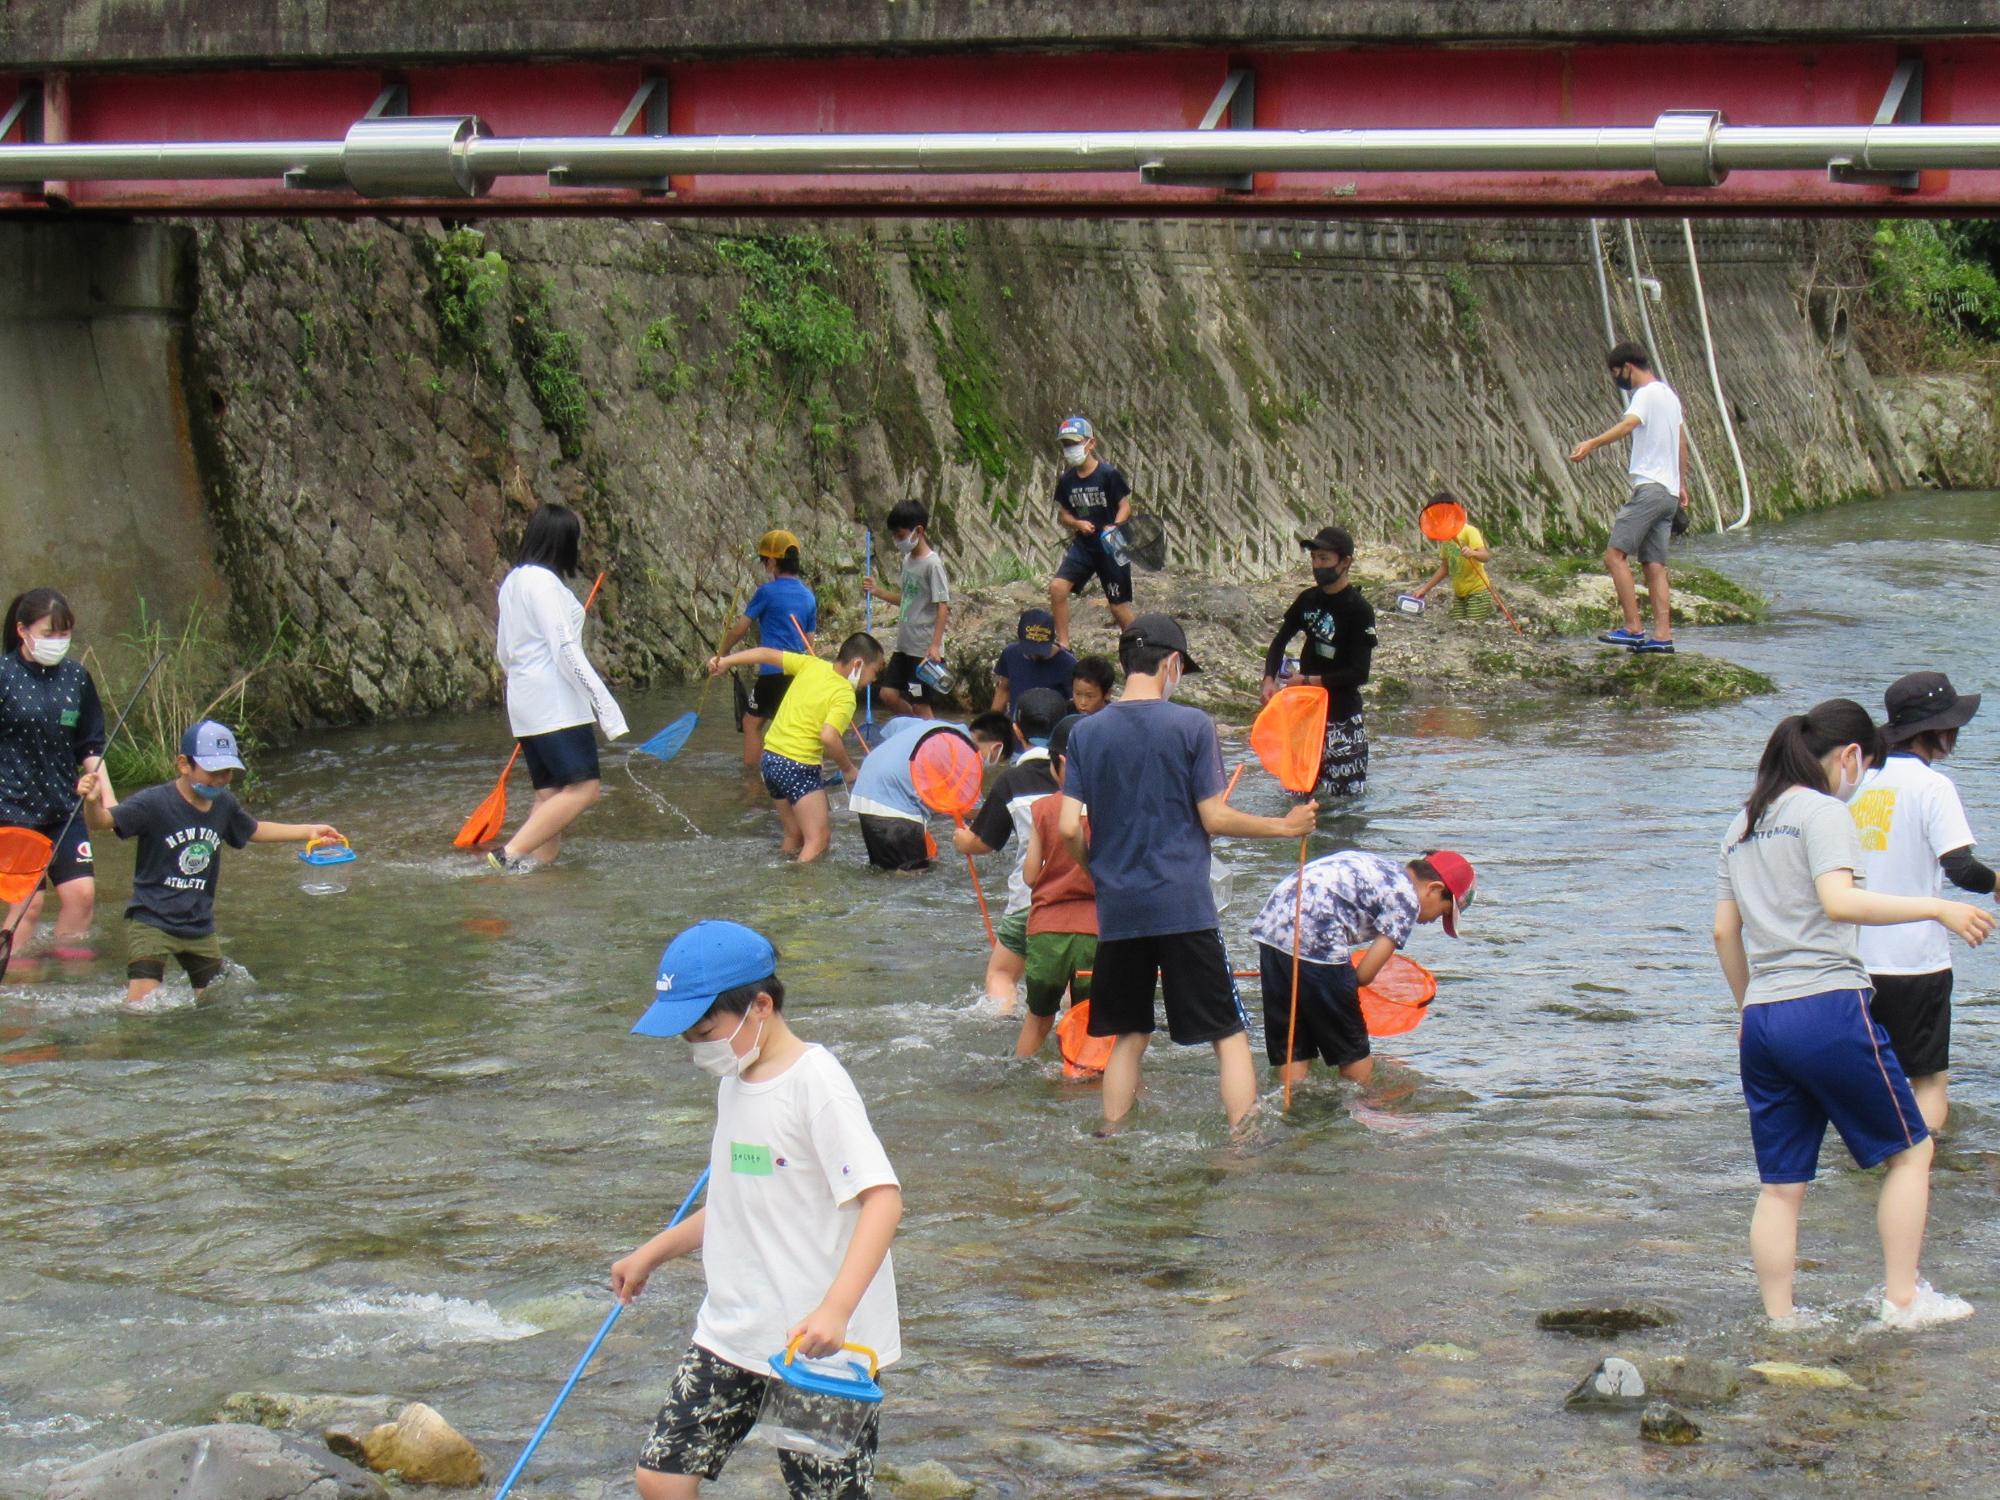 伊沢川の中で生き物を探す子どもたちの写真